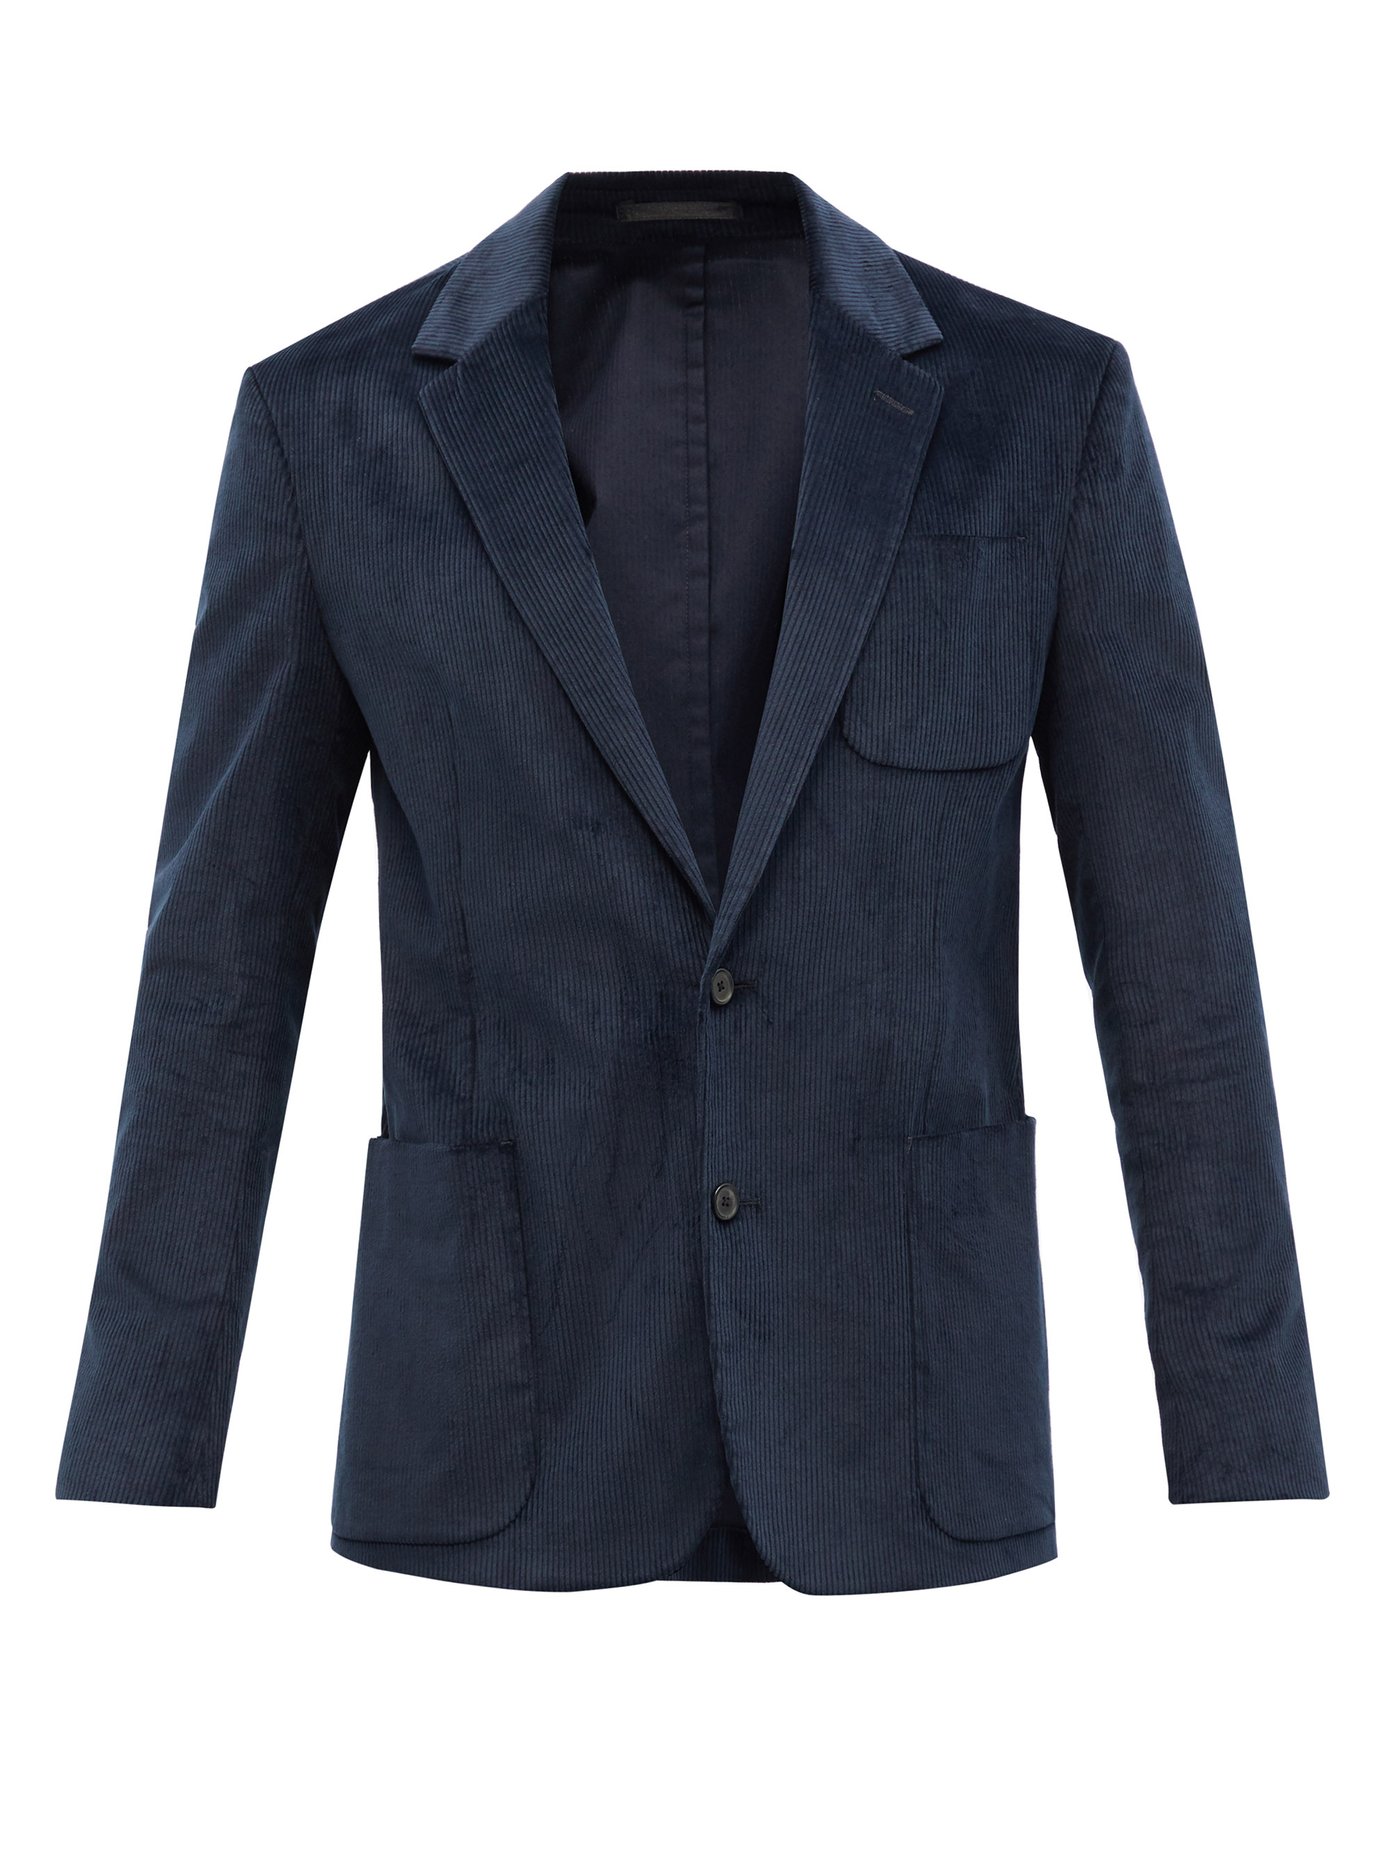 폴 스미스 코듀로이 수트 자켓 Paul Smith Navy Cotton-blend corduroy suit jacket